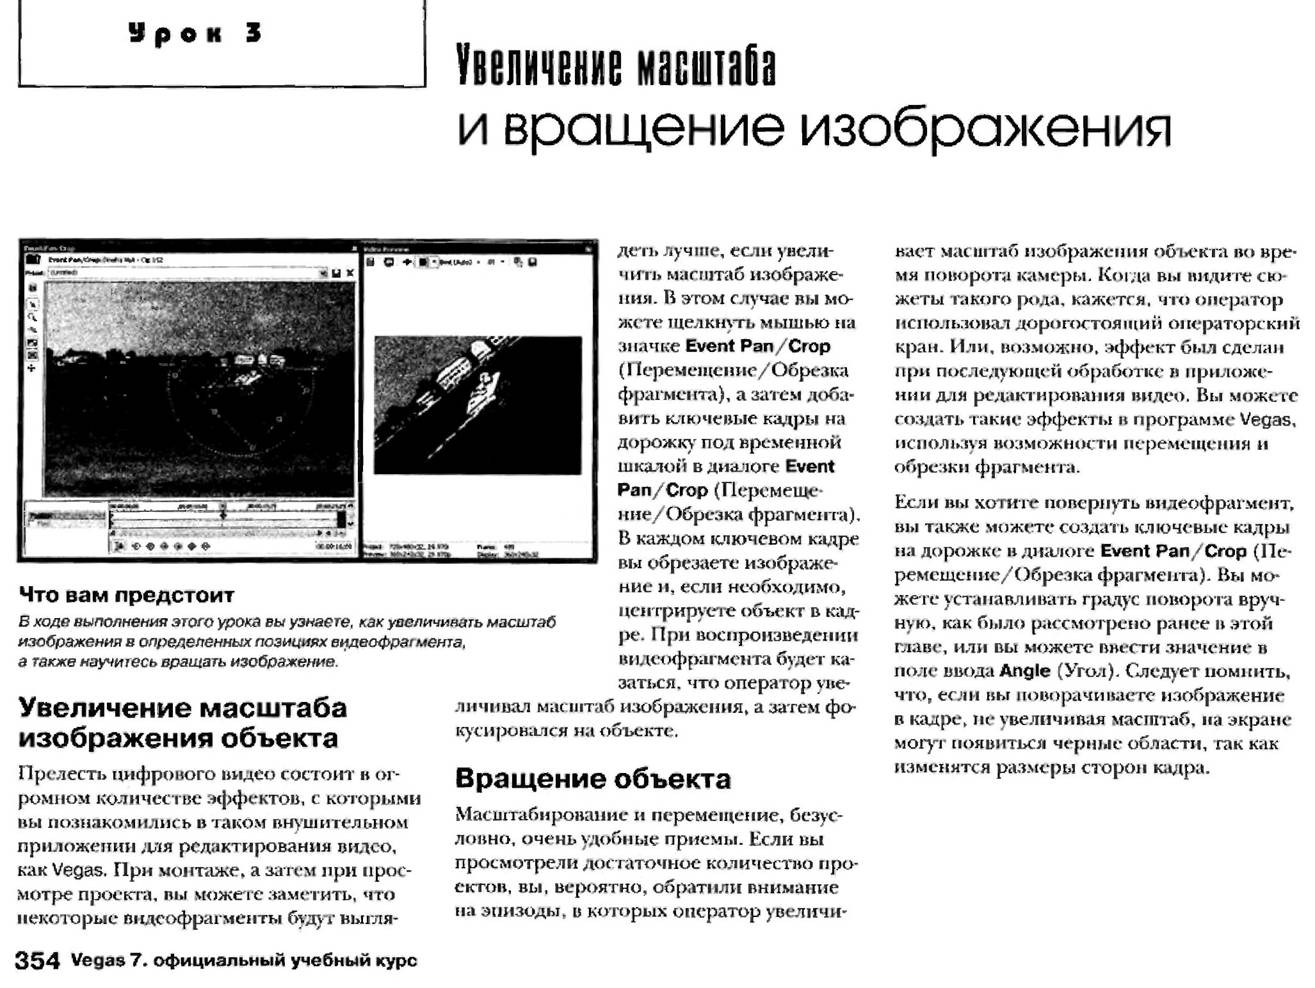 http://redaktori-uroki.3dn.ru/_ph/12/874868860.jpg